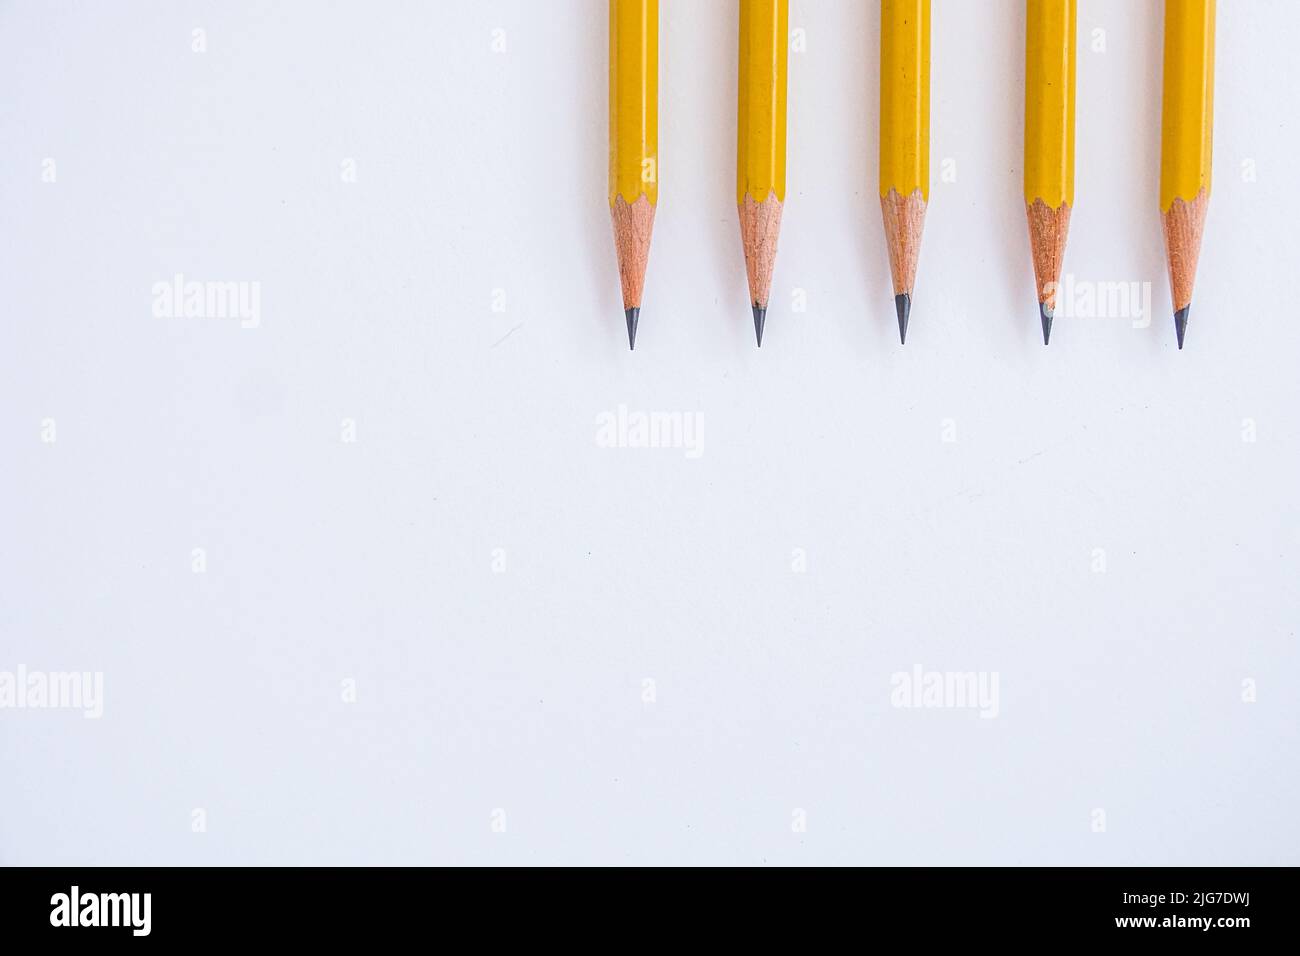 Der negative Raum wird mit fünf spitzen Bleistiften genutzt, die auf einem weißen Blatt Papier nach unten ausgerichtet sind. Stockfoto